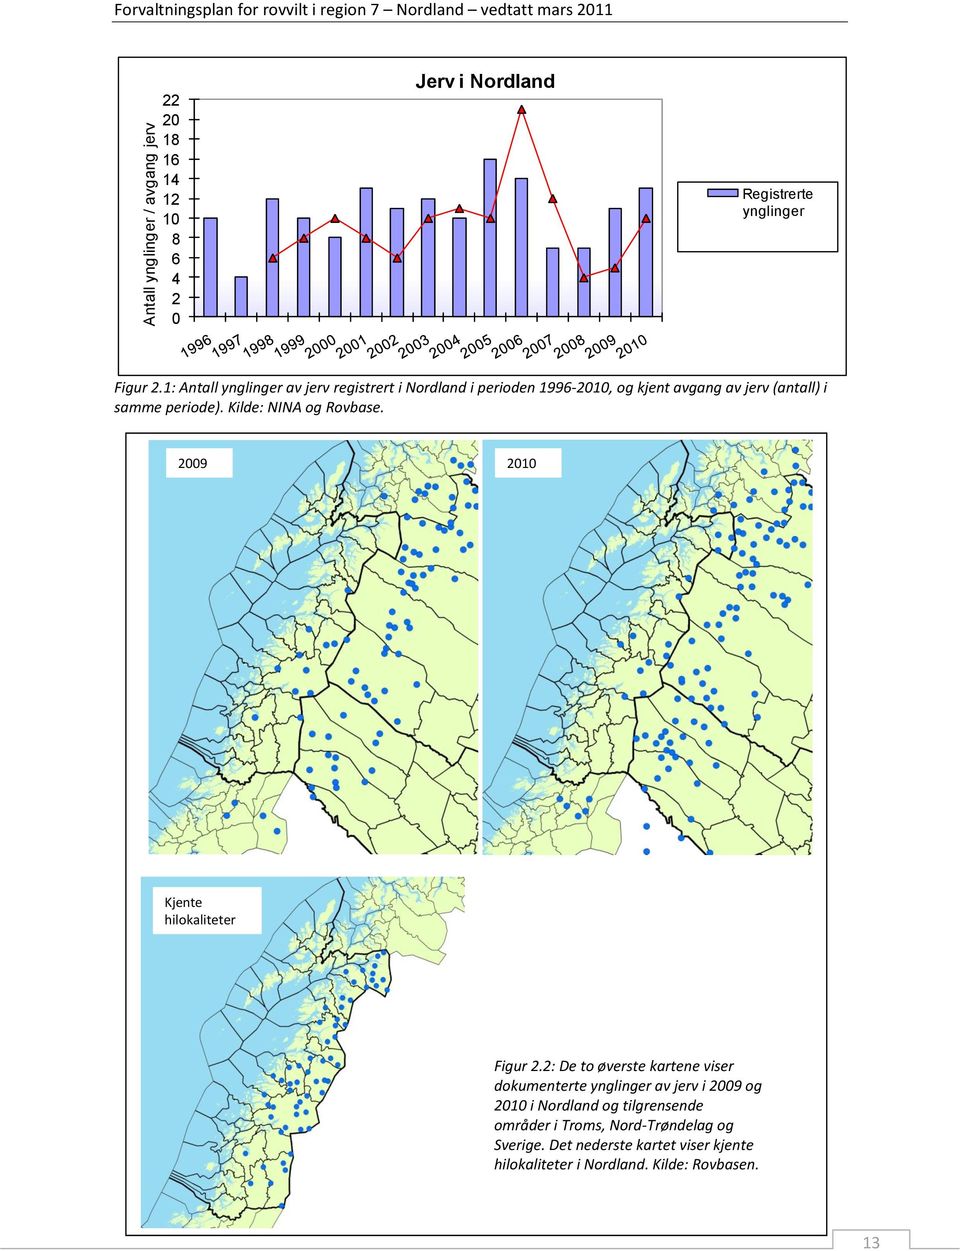 1: Antall ynglinger av jerv registrert i Nordland i perioden 1996-21, og kjent avgang av jerv (antall) i samme periode).